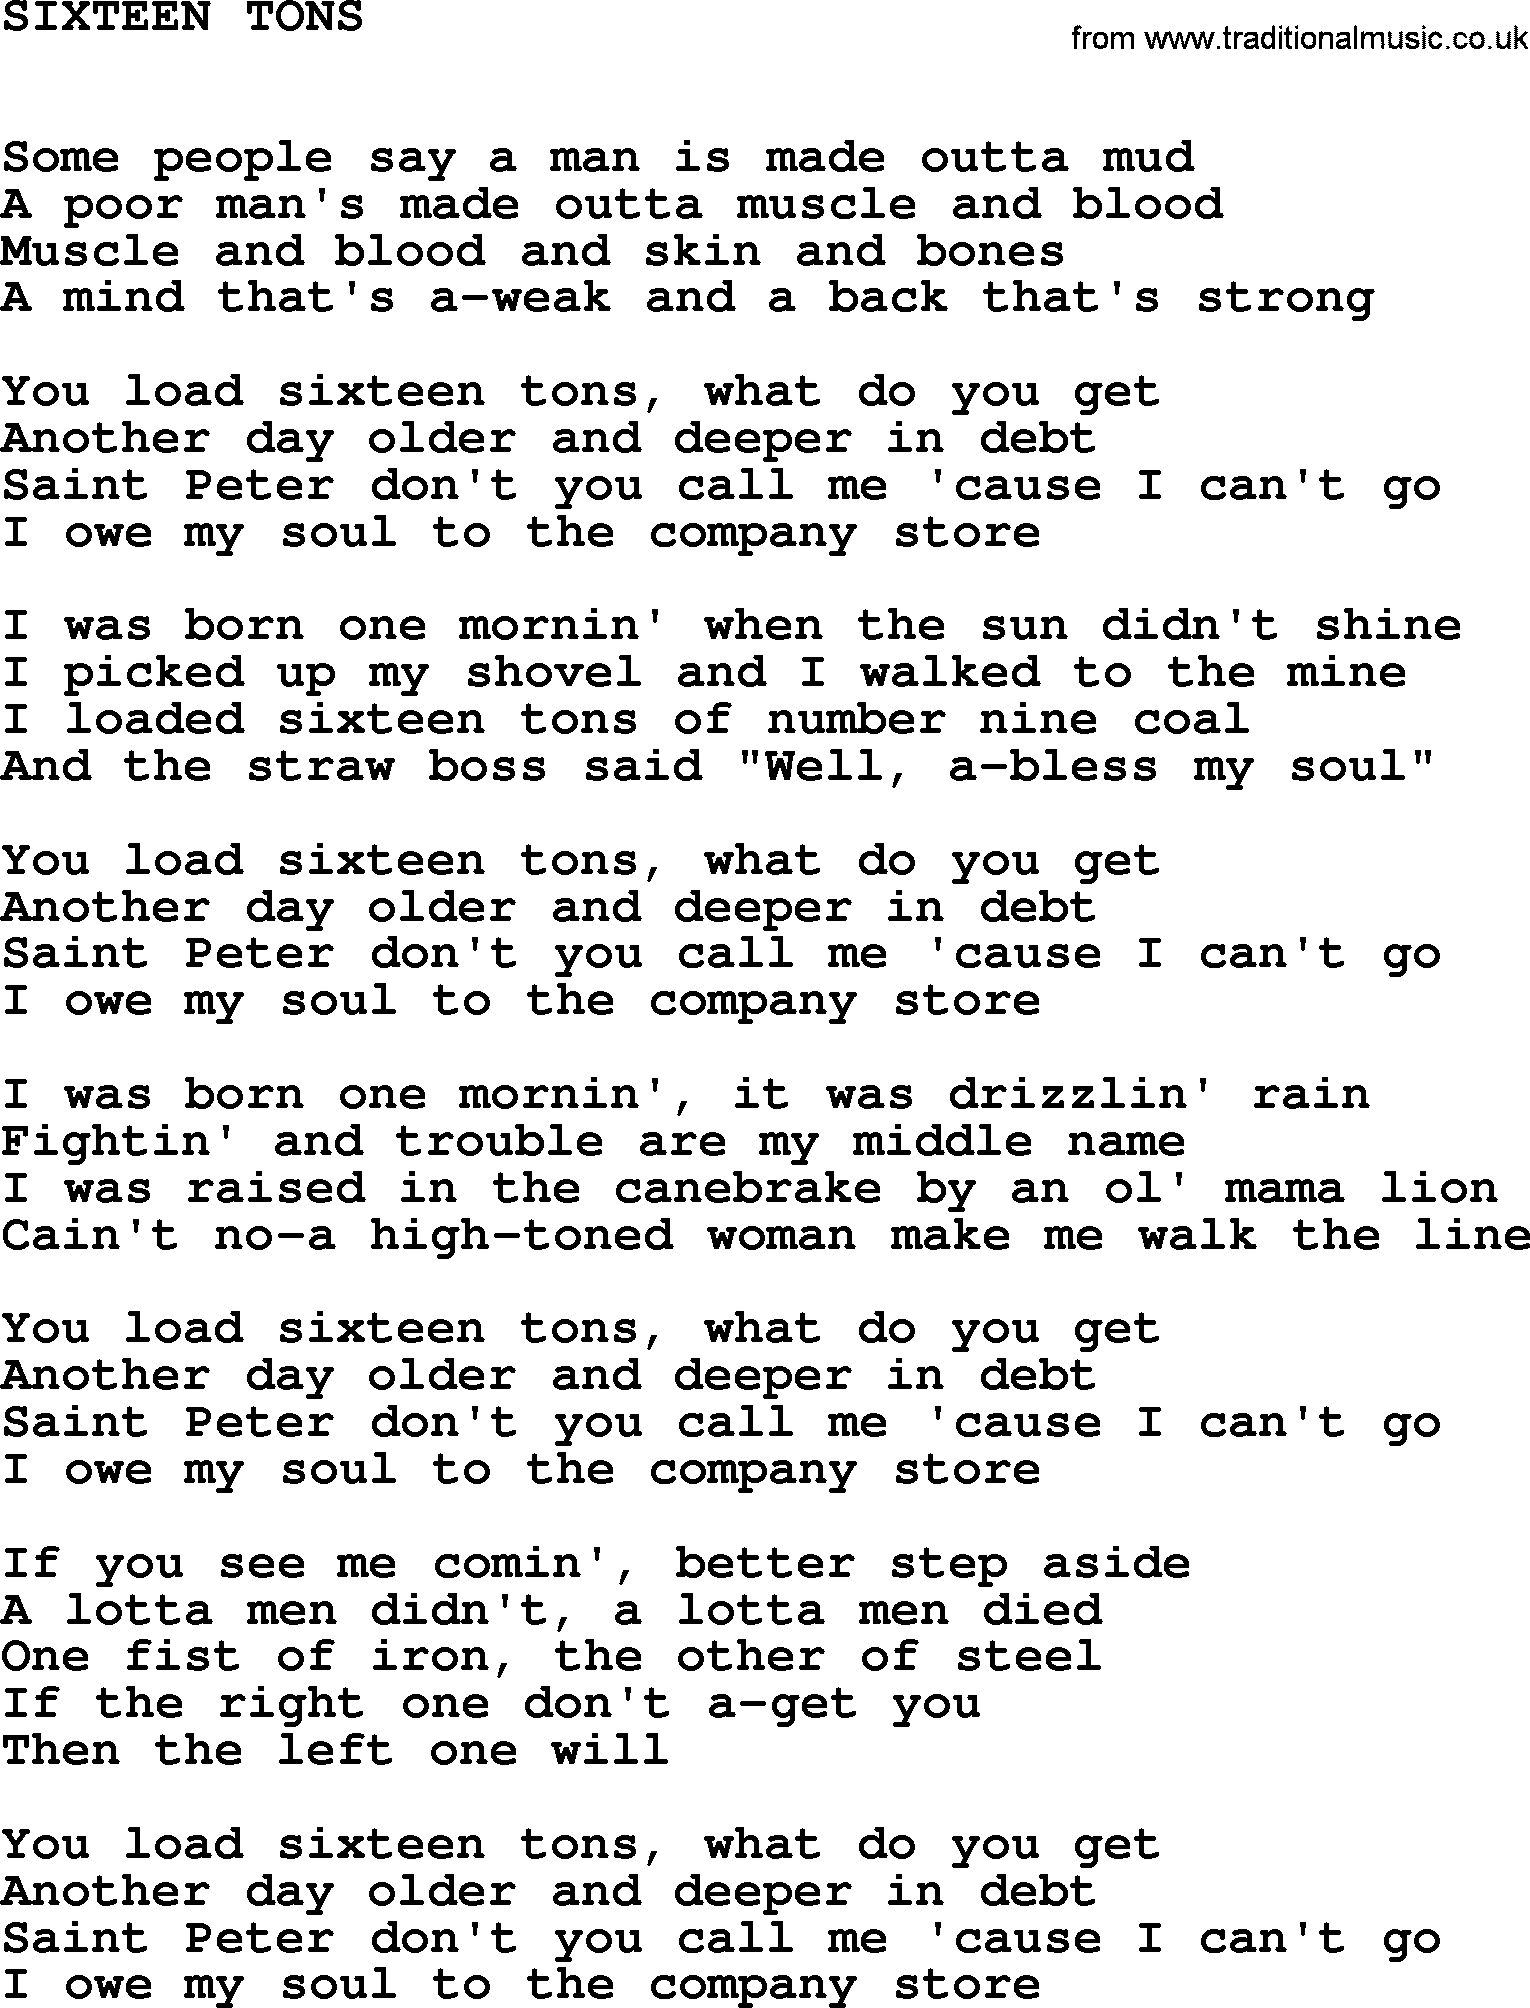 Johnny Cash song Sixteen Tons.txt lyrics